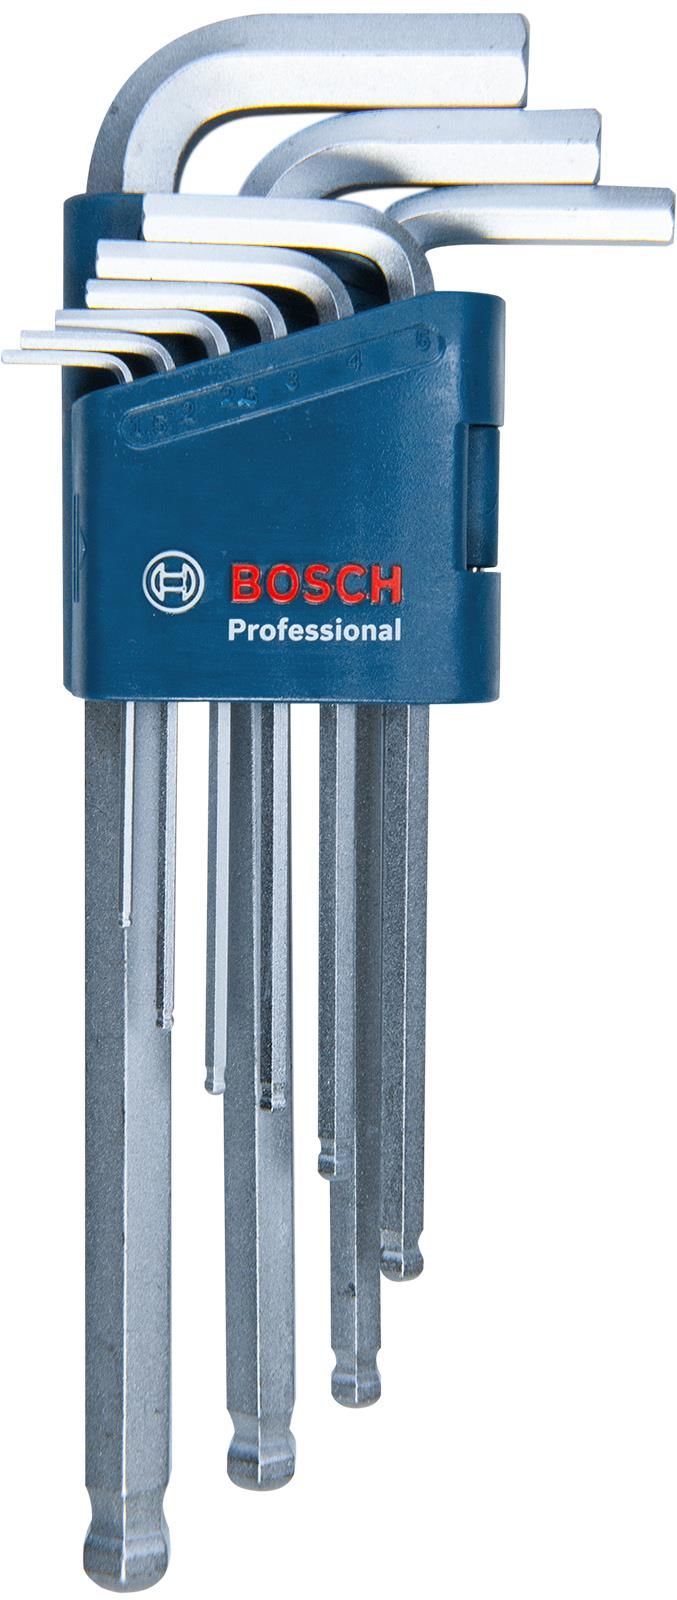 Bosch Profesyonel 1,5 - 10mm Topbaşlı Uzun Alyan Takımı 1600A01TH5